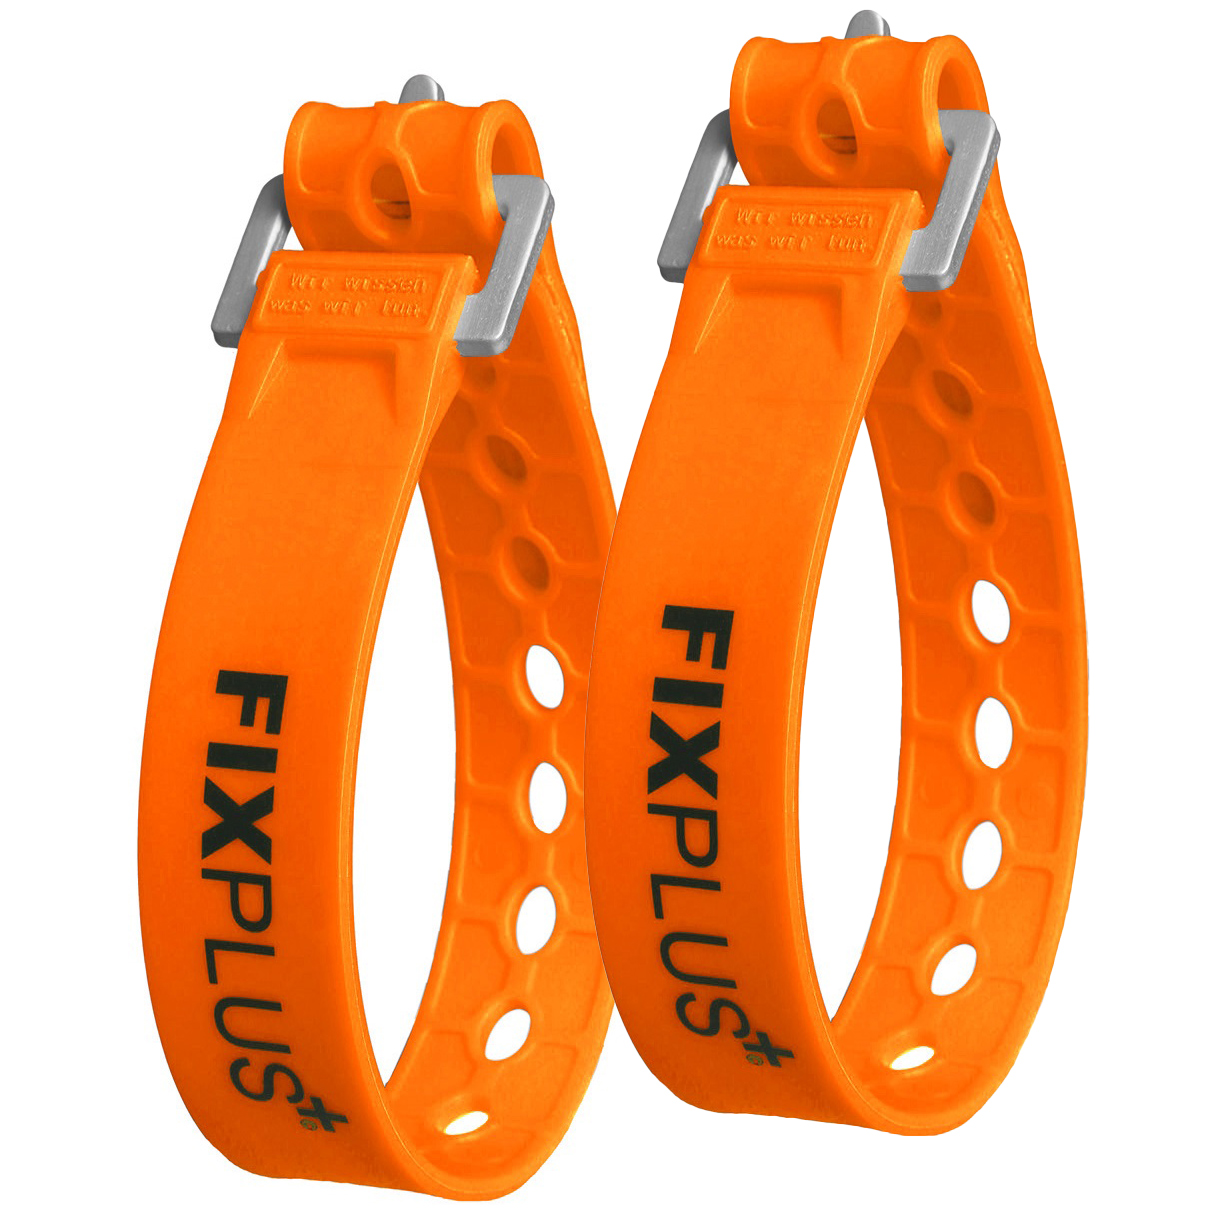 Produktbild von FixPlus Strap Gummizurrband 23cm - 2 Stck - orange